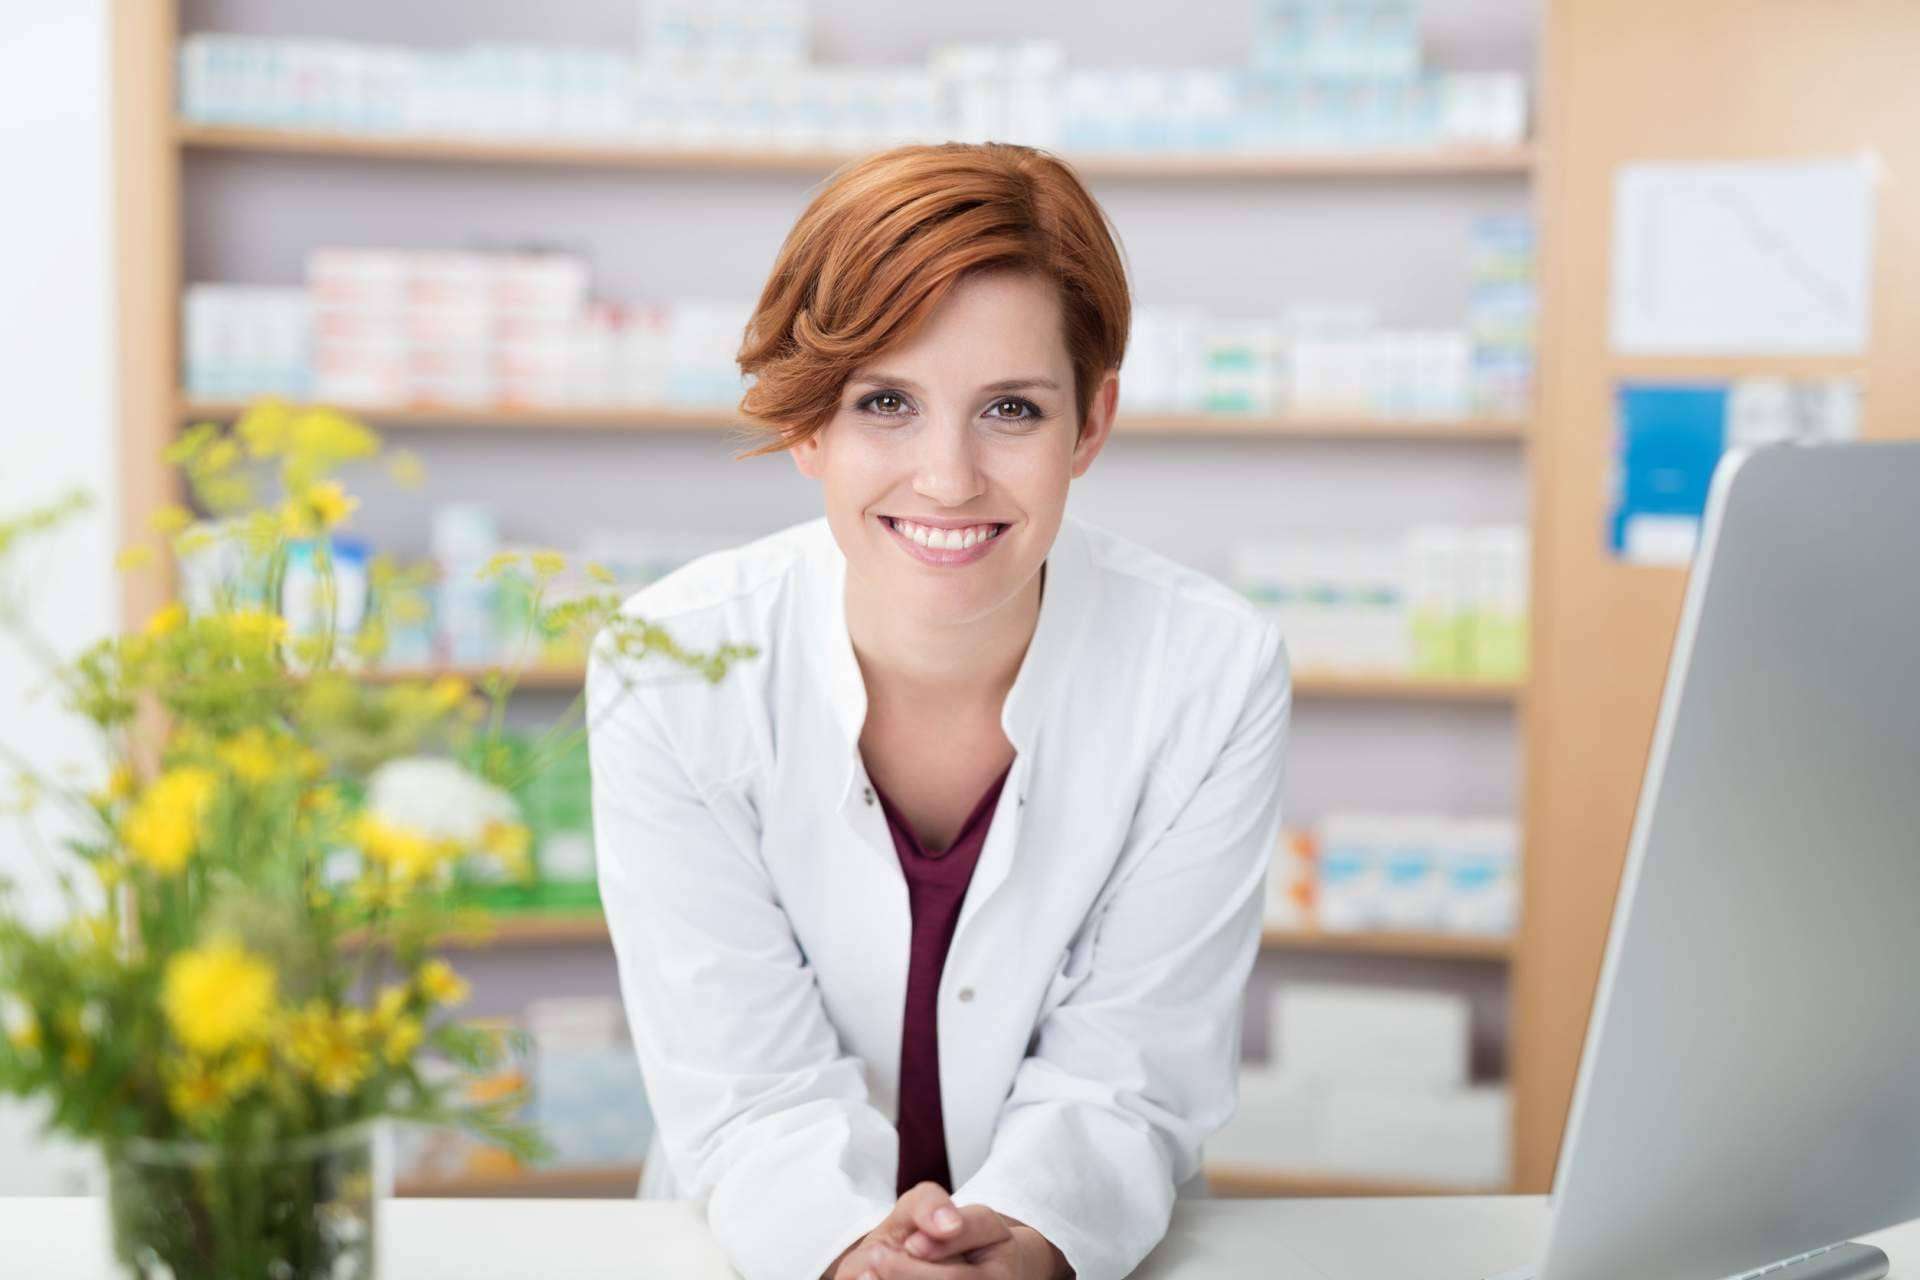 La importancia de un buen asesoramiento para la compra de una oficina de farmacia, por Urbagesa Farmacias